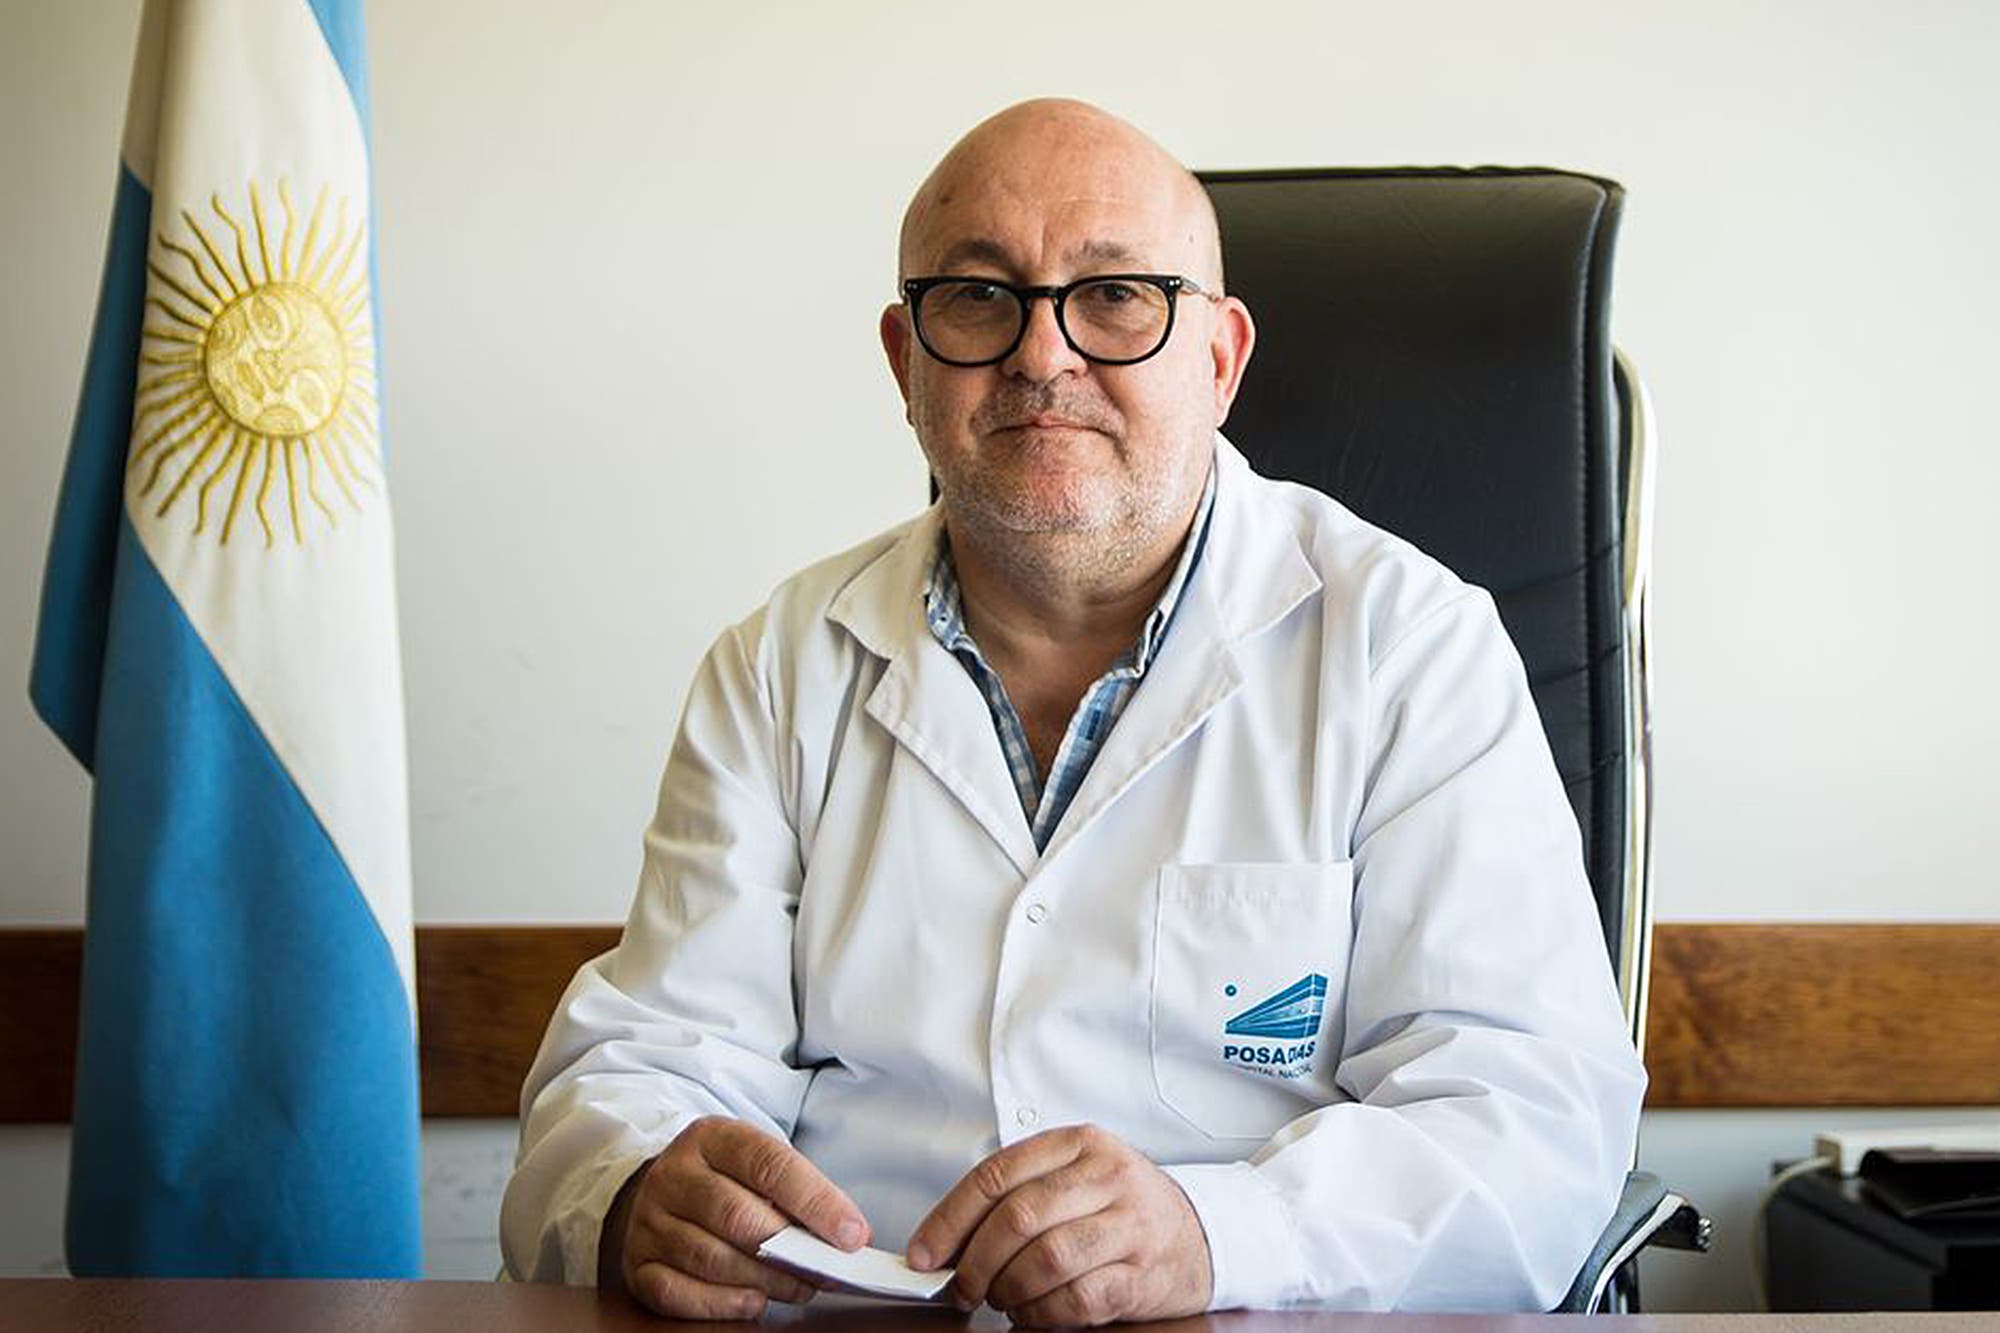 Maceira contó detalles de la vacunación VIP en el Ministerio de Salud.